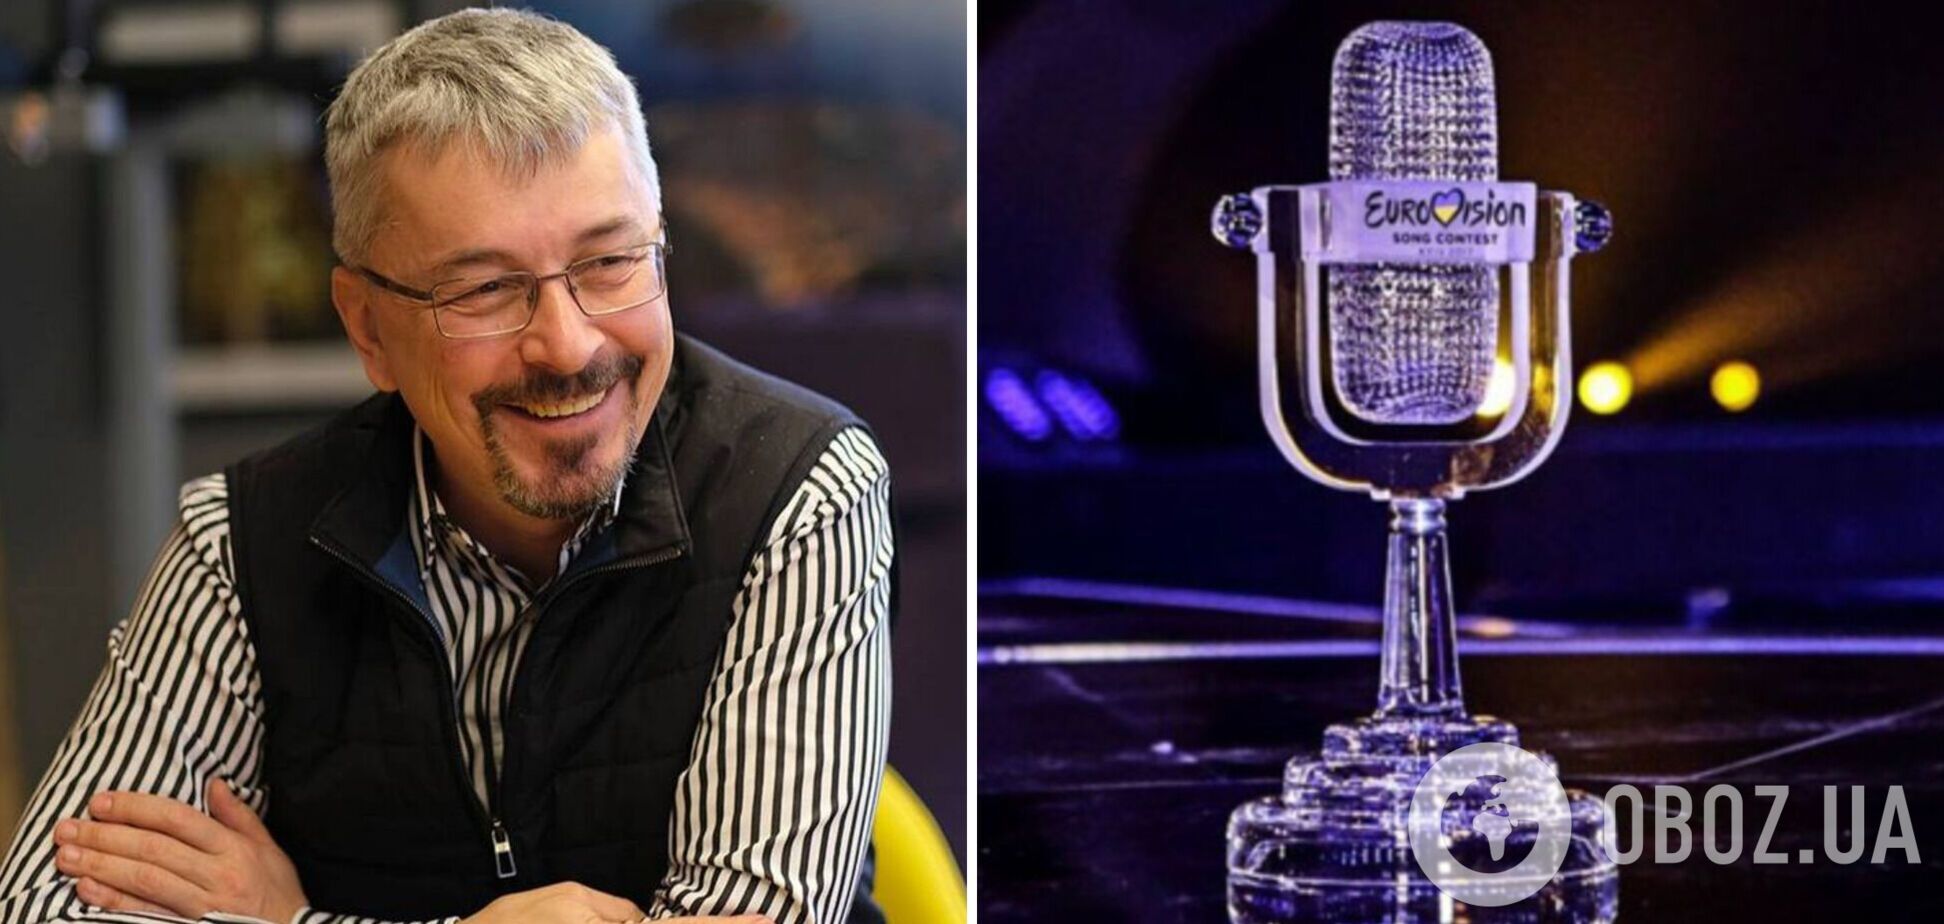 Евровидение-2023 пройдет в Украине: Ткаченко опроверг слухи о поисках другой площадки